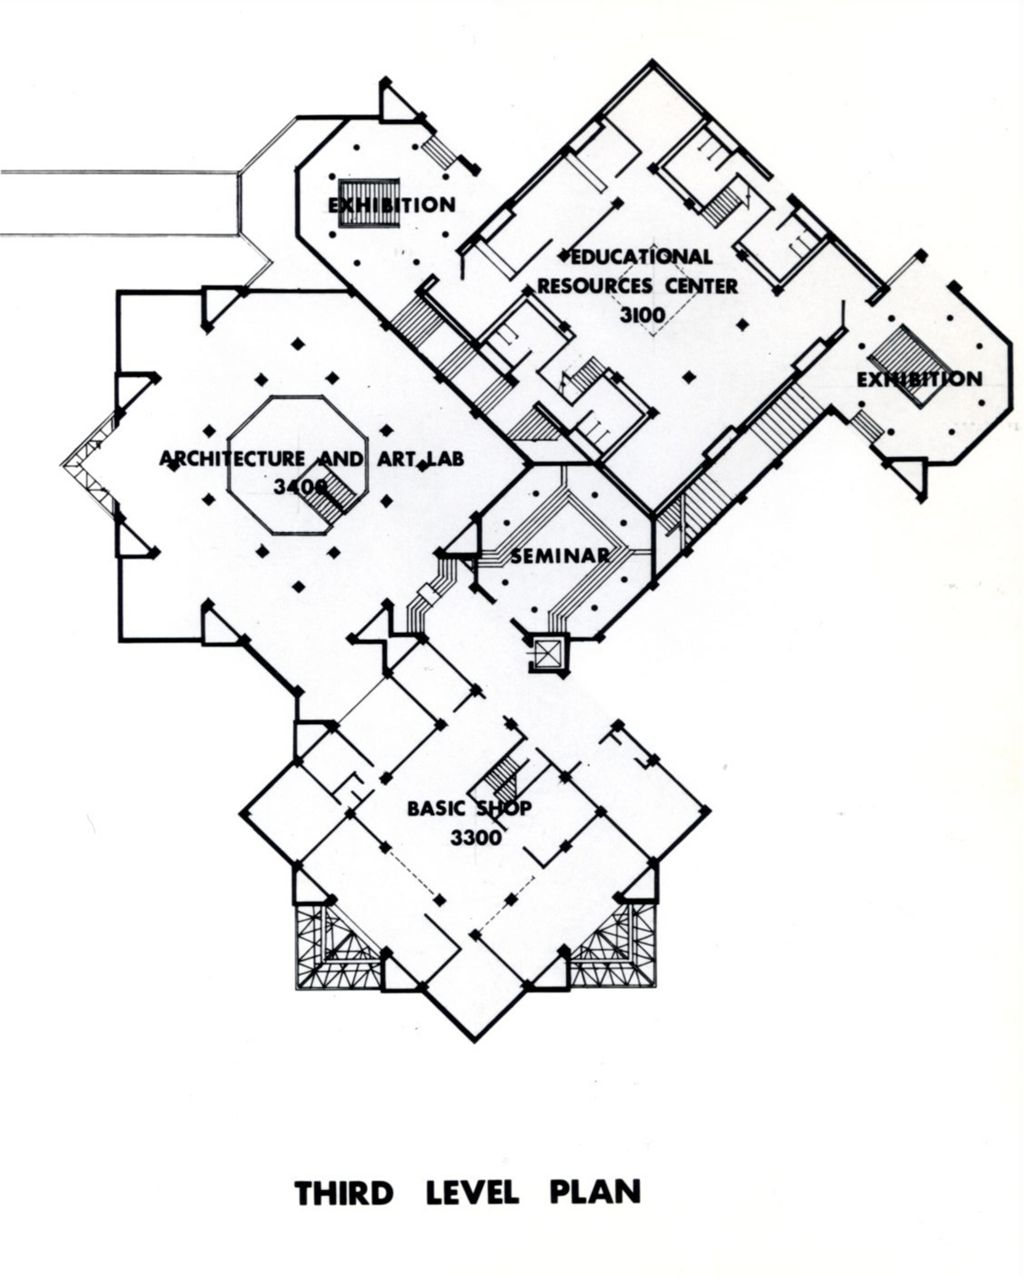 Miniature of Third level floor plan, Architecture and Design Studios